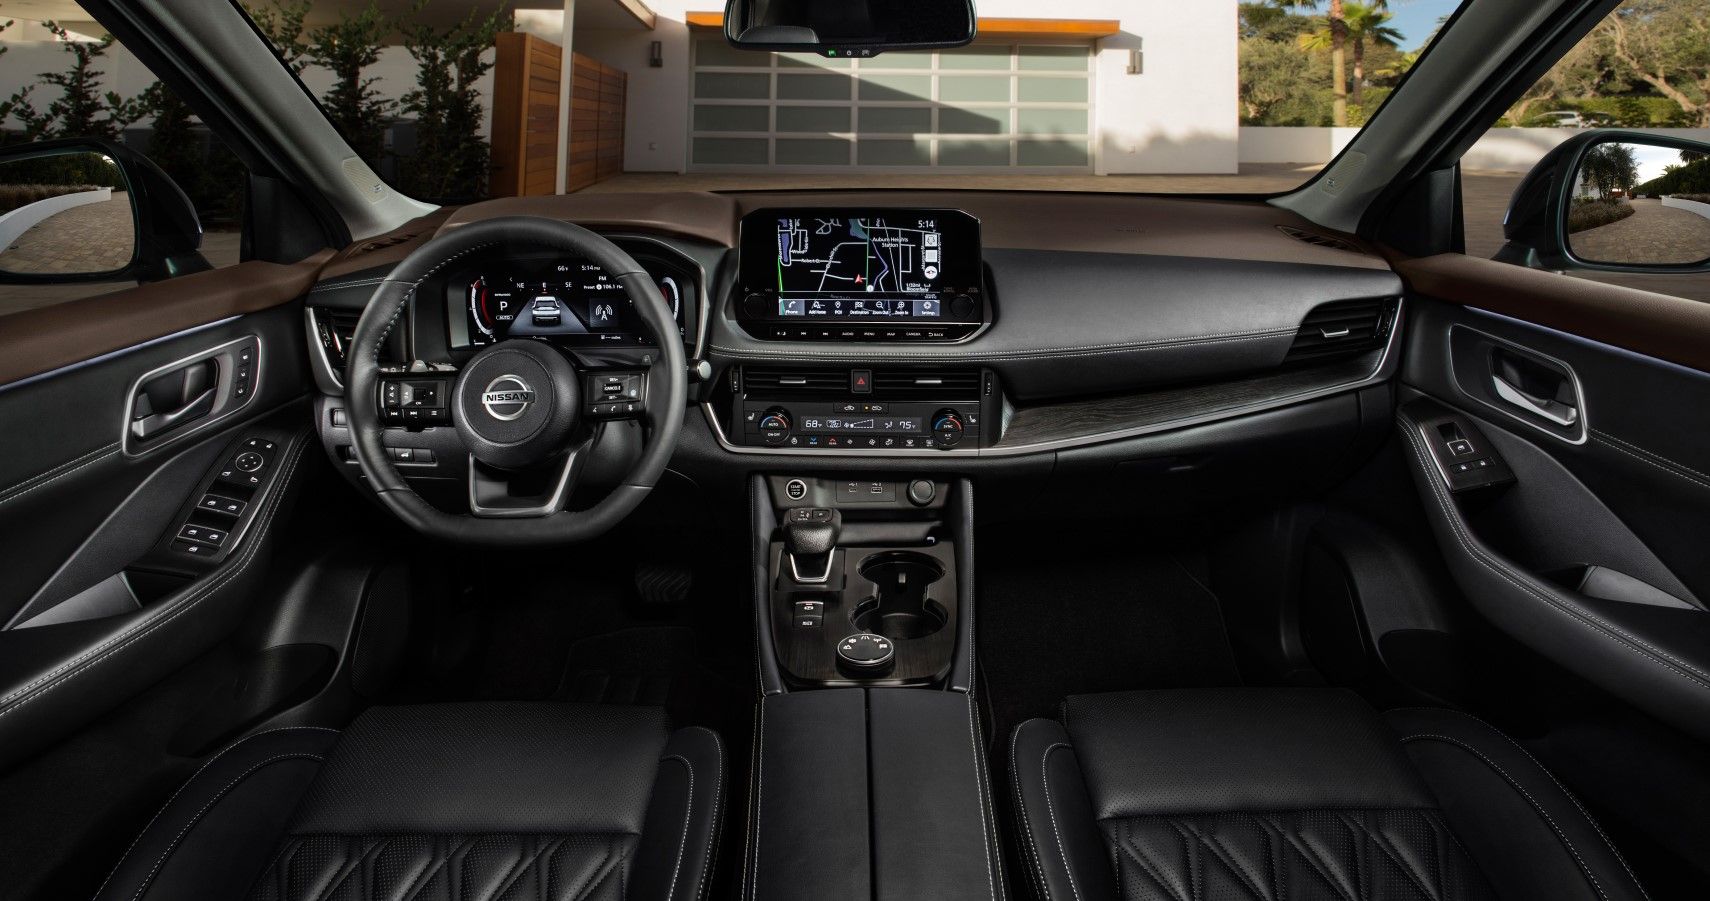 2021 Nissan Rogue interior dashbaord layout view